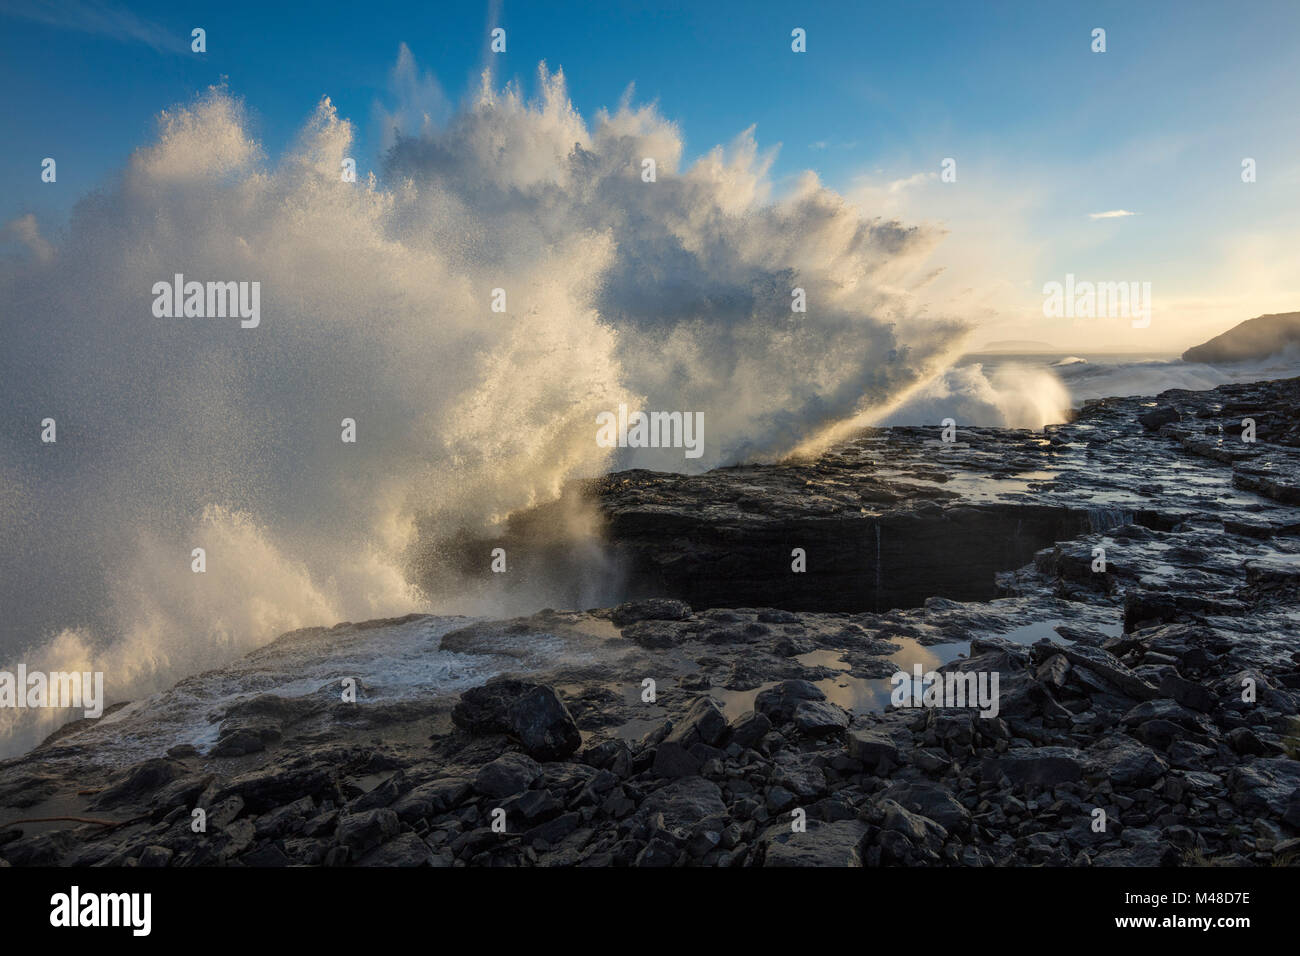 Wave breaking on the shore at Easky, County Sligo, Ireland. Stock Photo